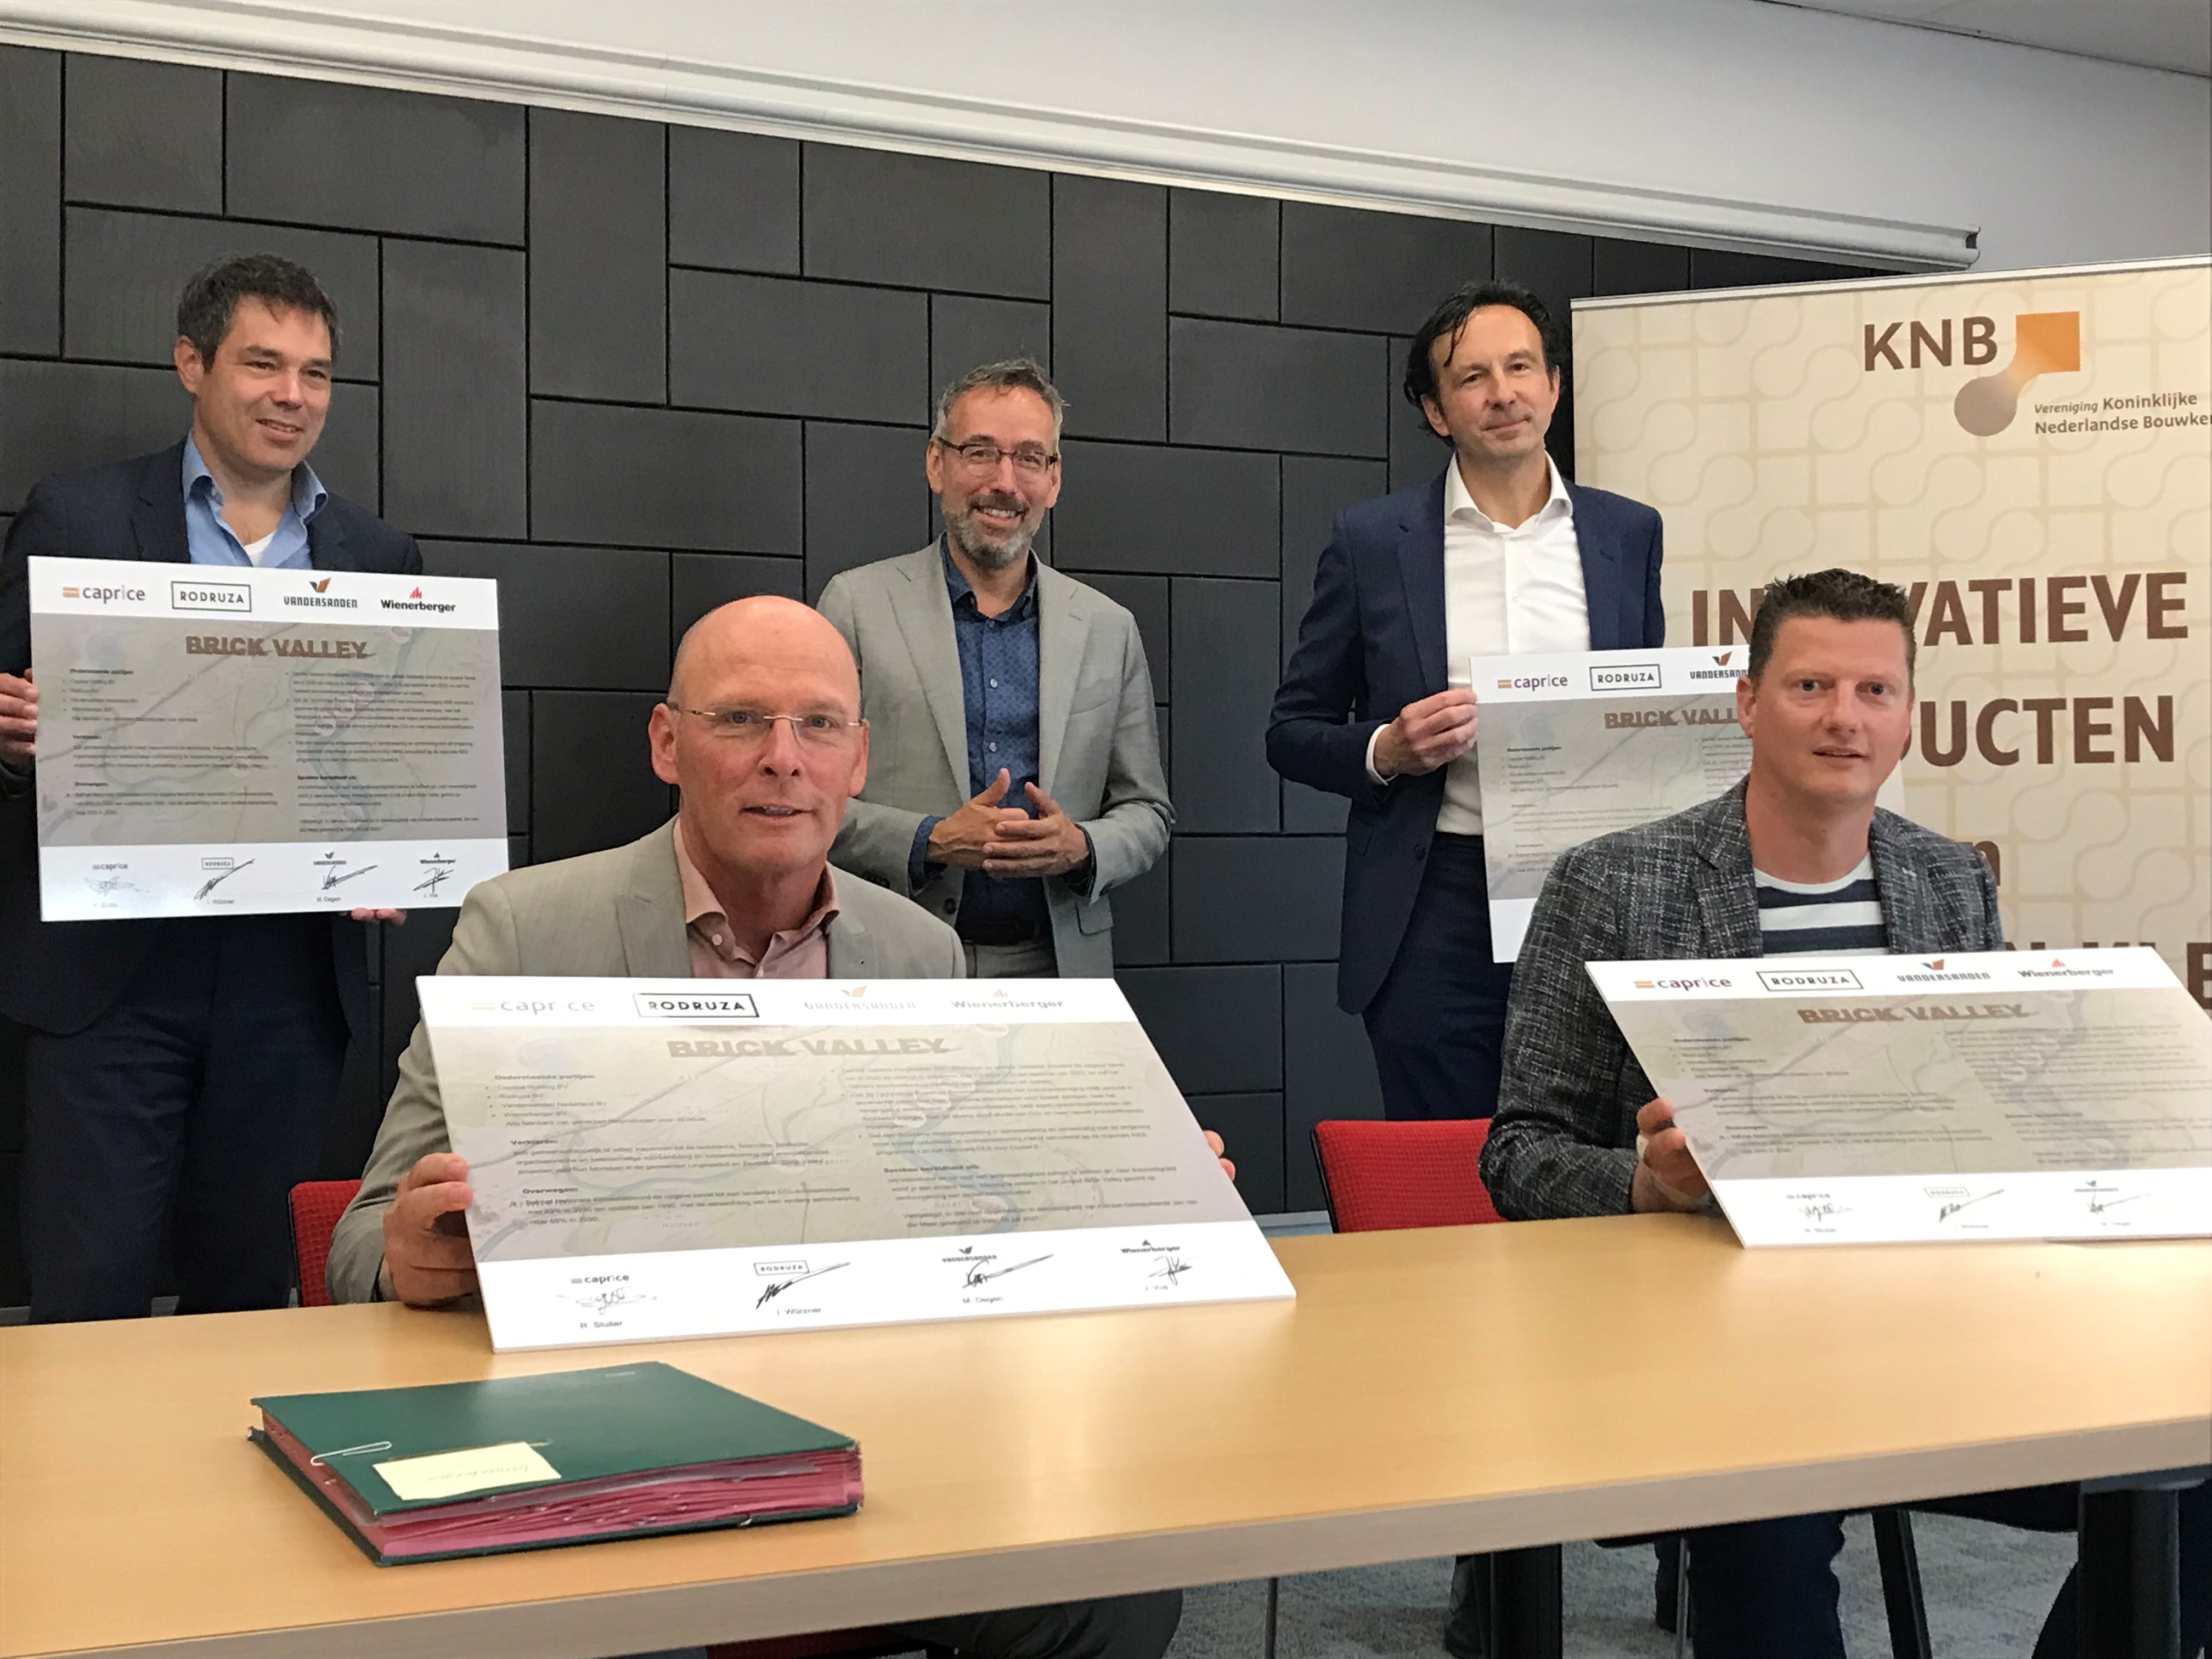 Ondertekening gezamenlijke intentieverklaring voor ‘Brick Valley’ op 16 juli 2021. Van links naar rechts Jasper Vos, Michel Degen, Jan van der Meer, Ivo Würzner en Rudi Sluiter.